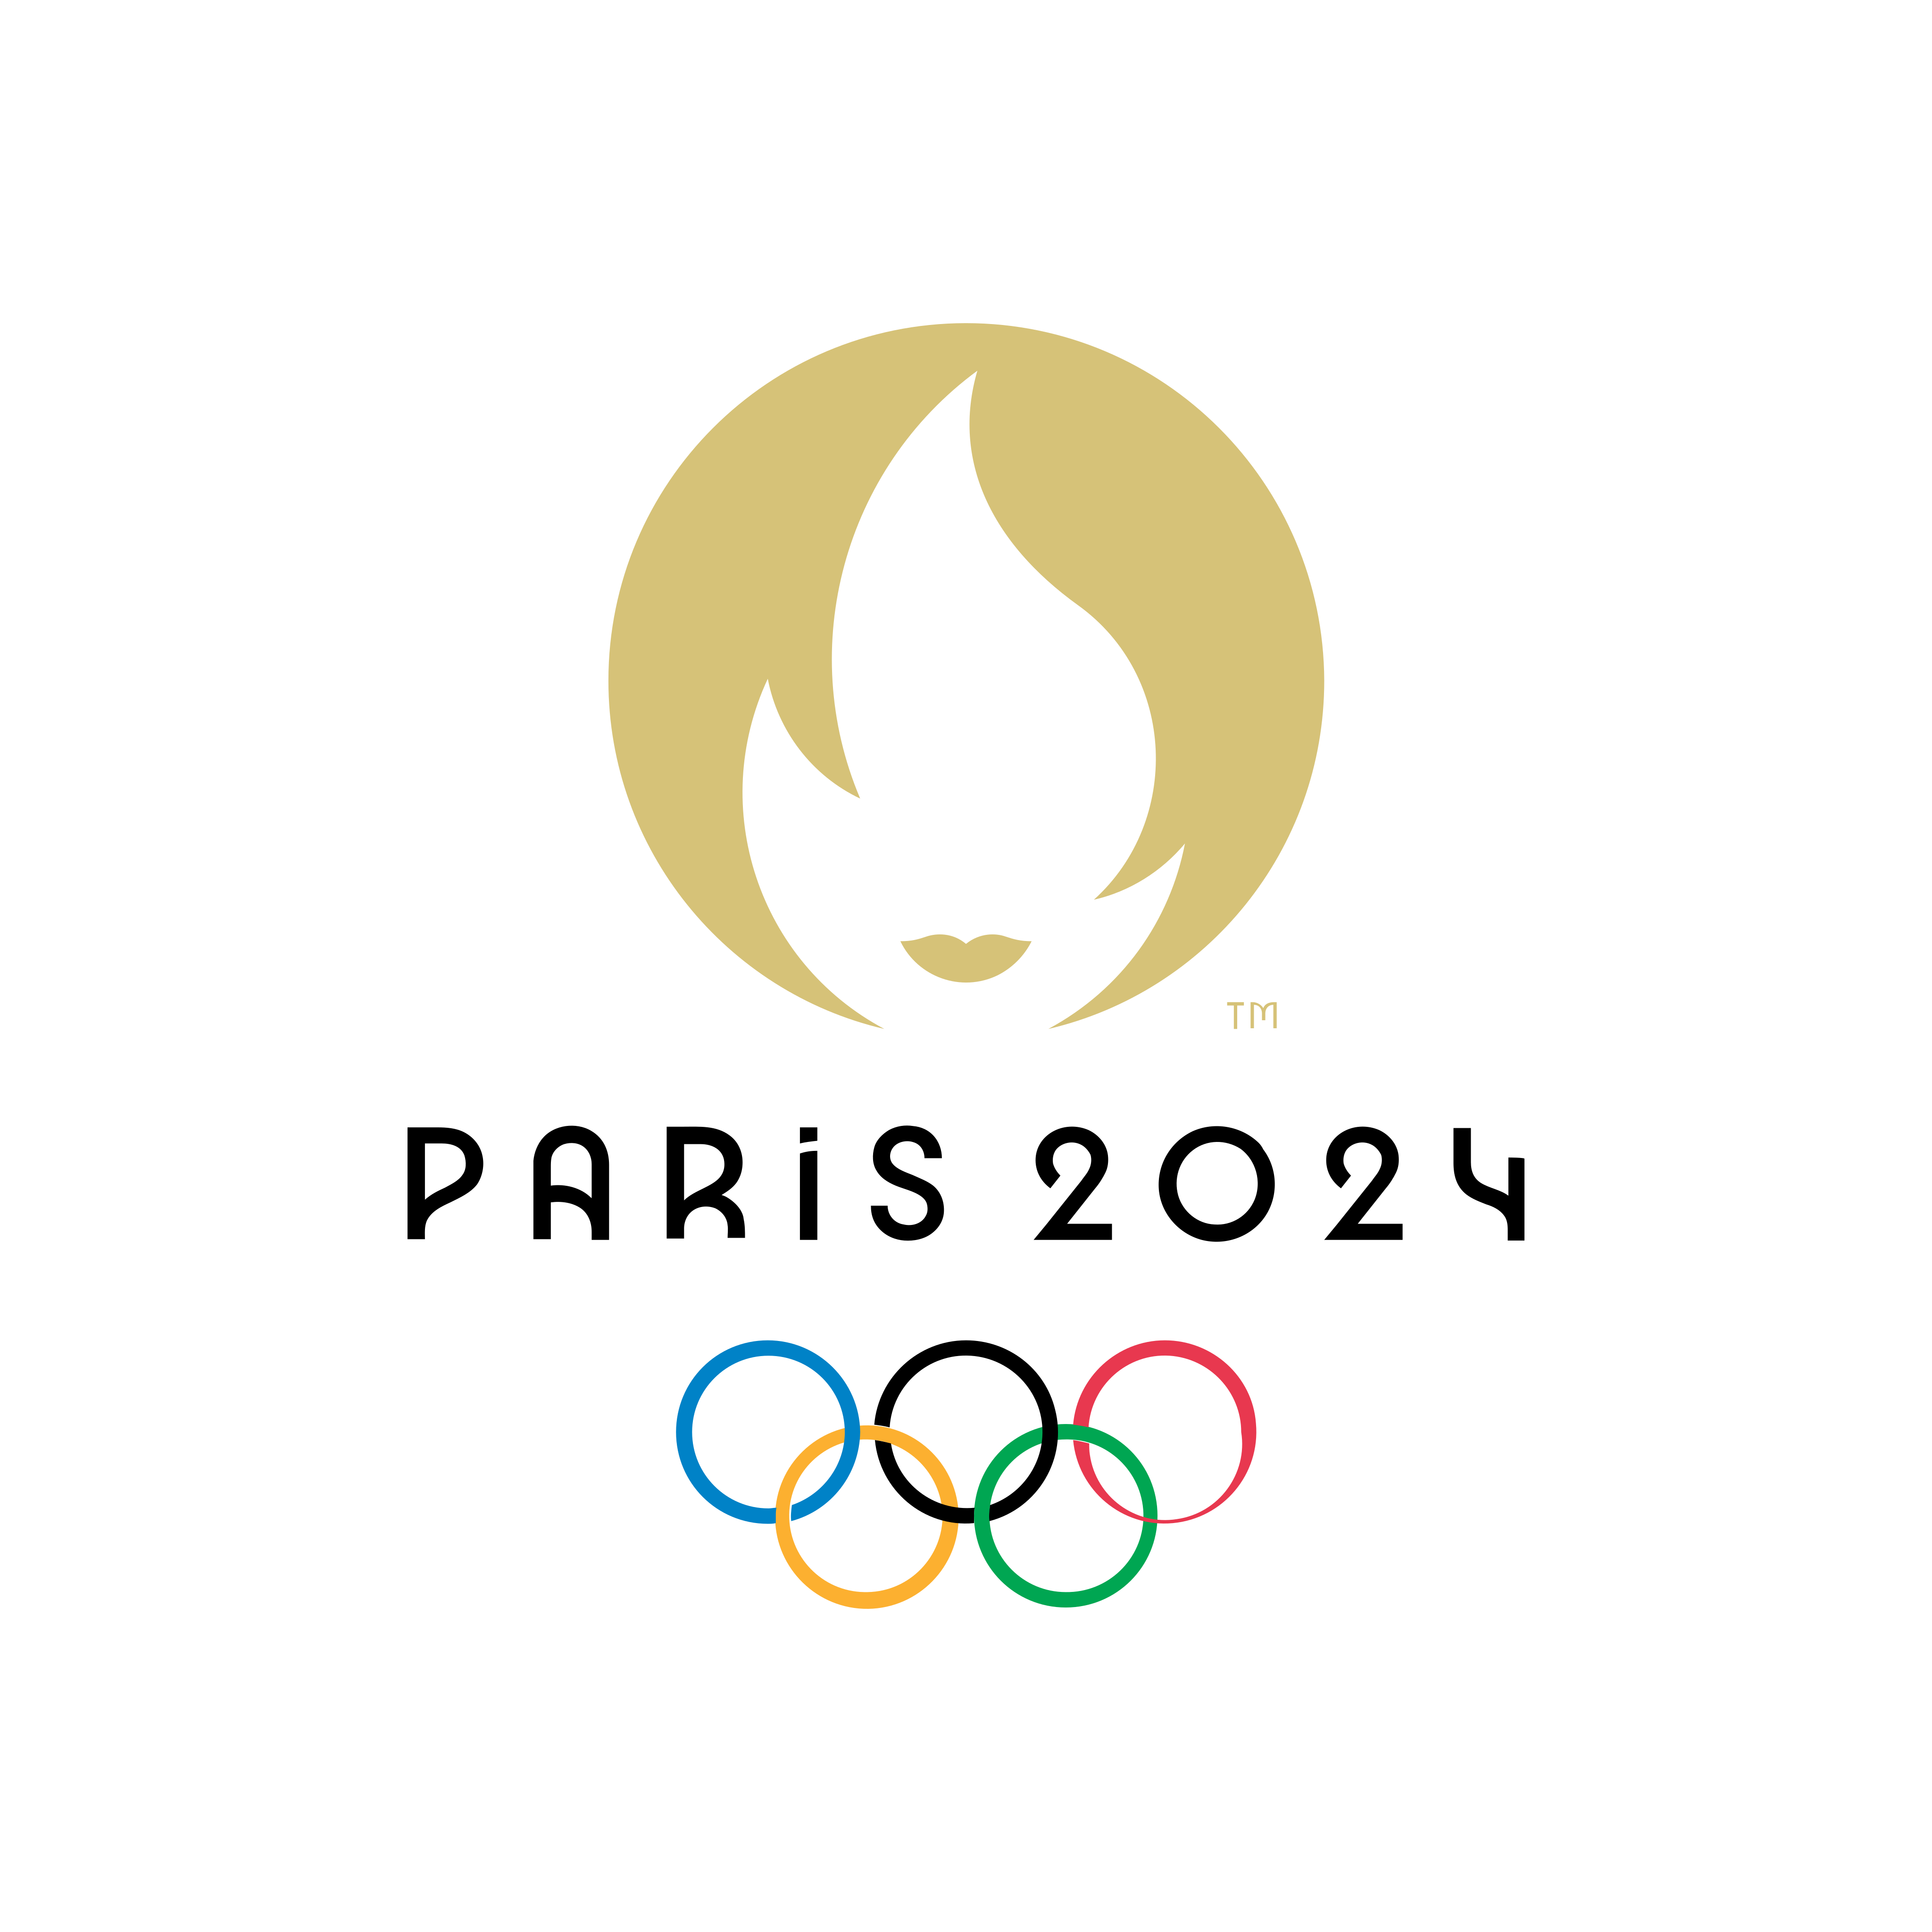 Logotipo dos Jogos Olímpicos Paris 2024